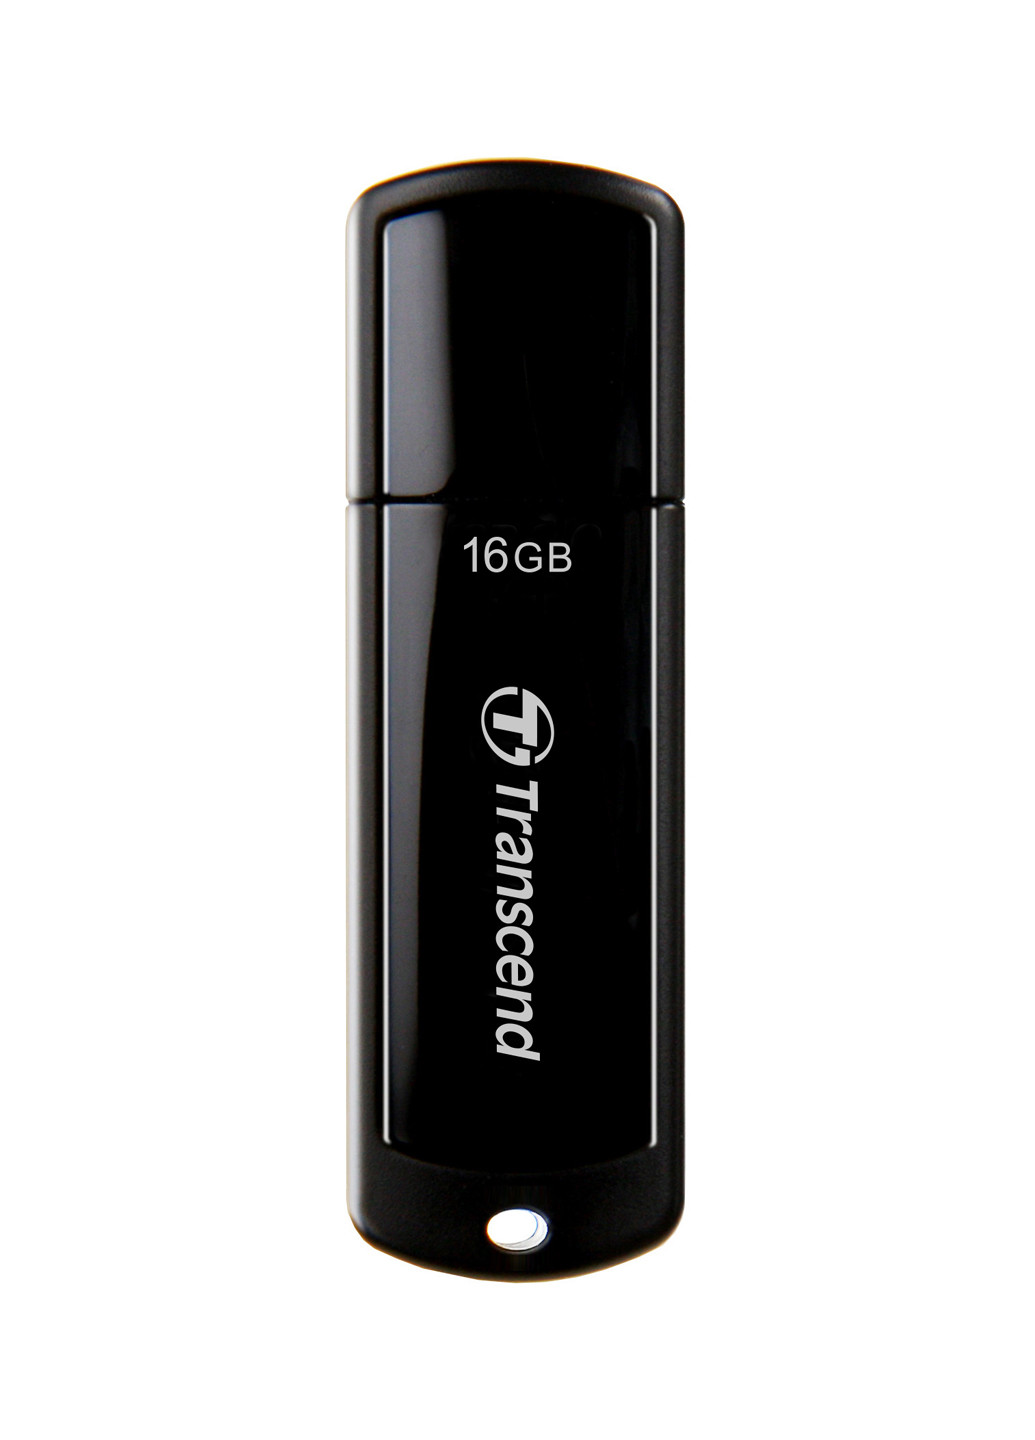 Флеш память USB JetFlash 700 16GB USB 3.0 Black (TS16GJF700) Transcend флеш память usb transcend jetflash 700 16gb usb 3.0 black (ts16gjf700) (132638341)